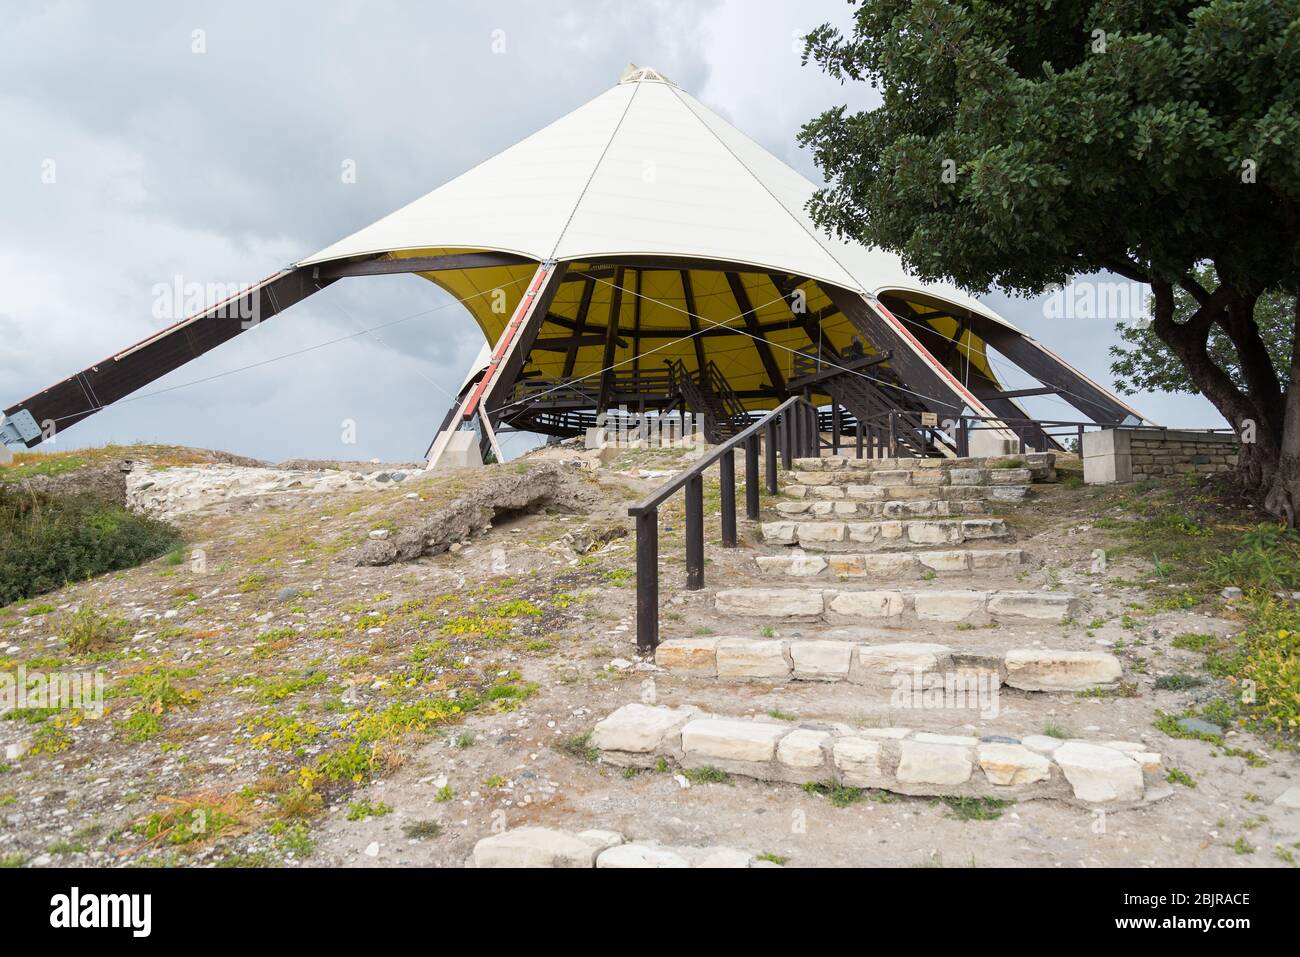 Kalavasos-Tent Archäologische Stätte, eine prähistorische neolithische archäologische Stätte und Wahrzeichen auf der Insel Zypern, Kalavasos Village, Larnaka Stockfoto